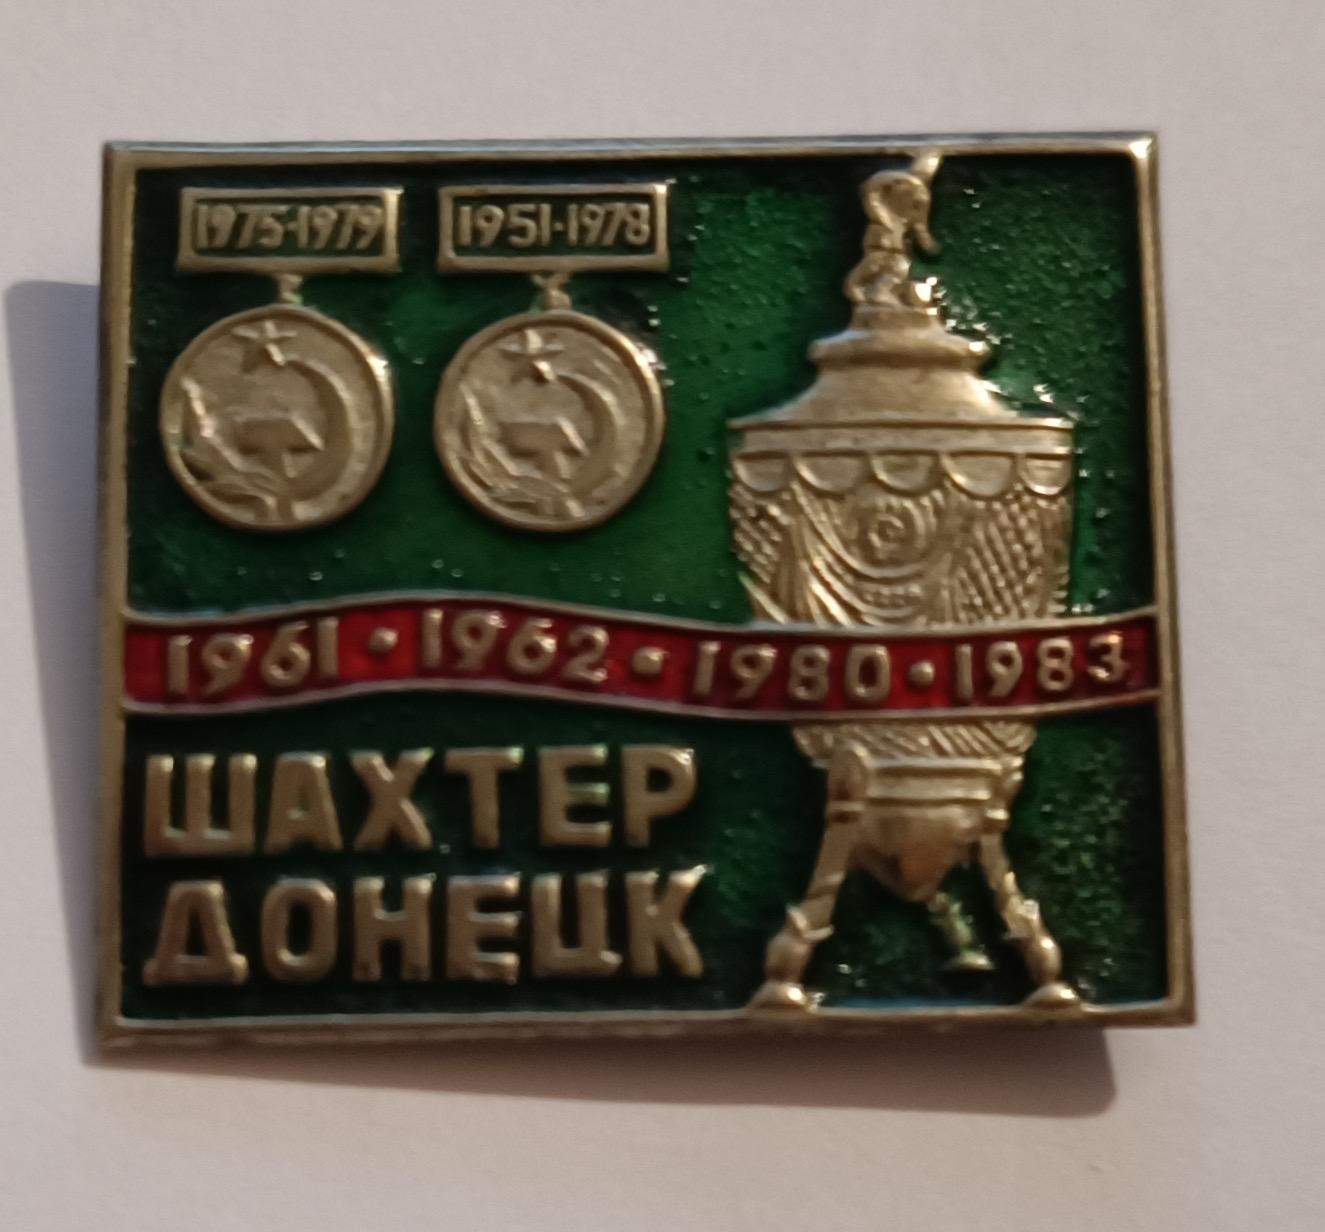 Шахтер Донецк обладатель кубка СССР (В металле)